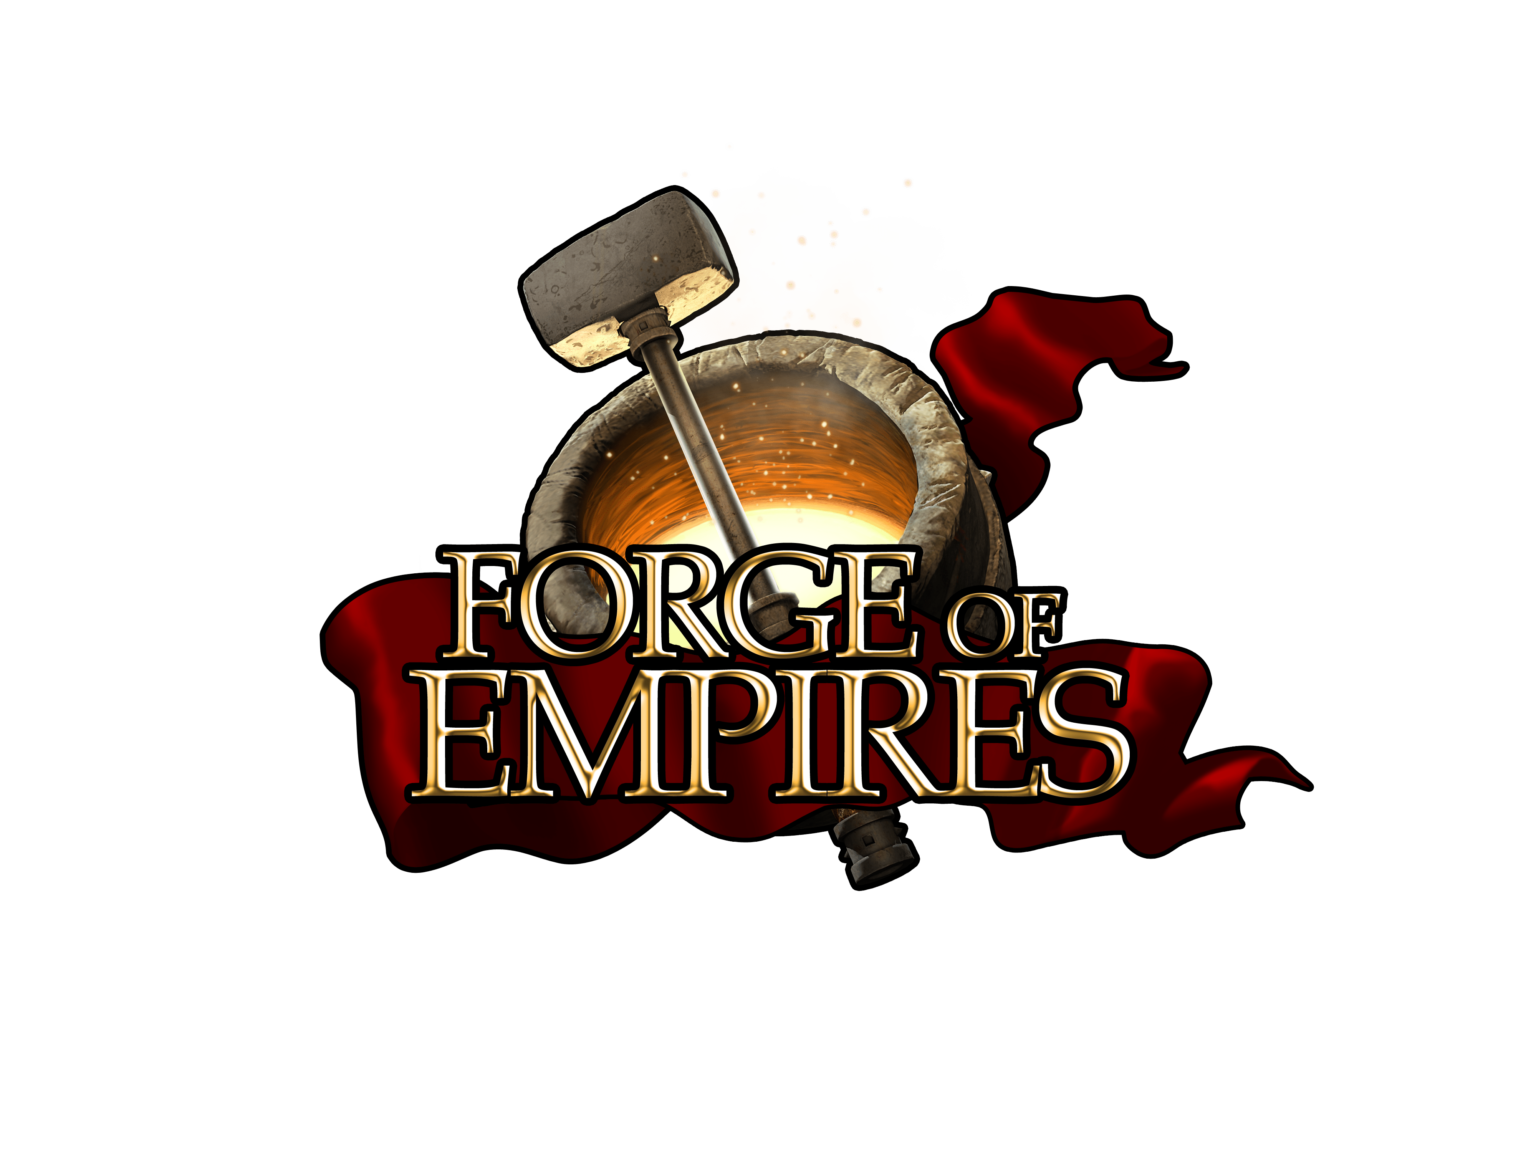 forge of empires forum deutsch